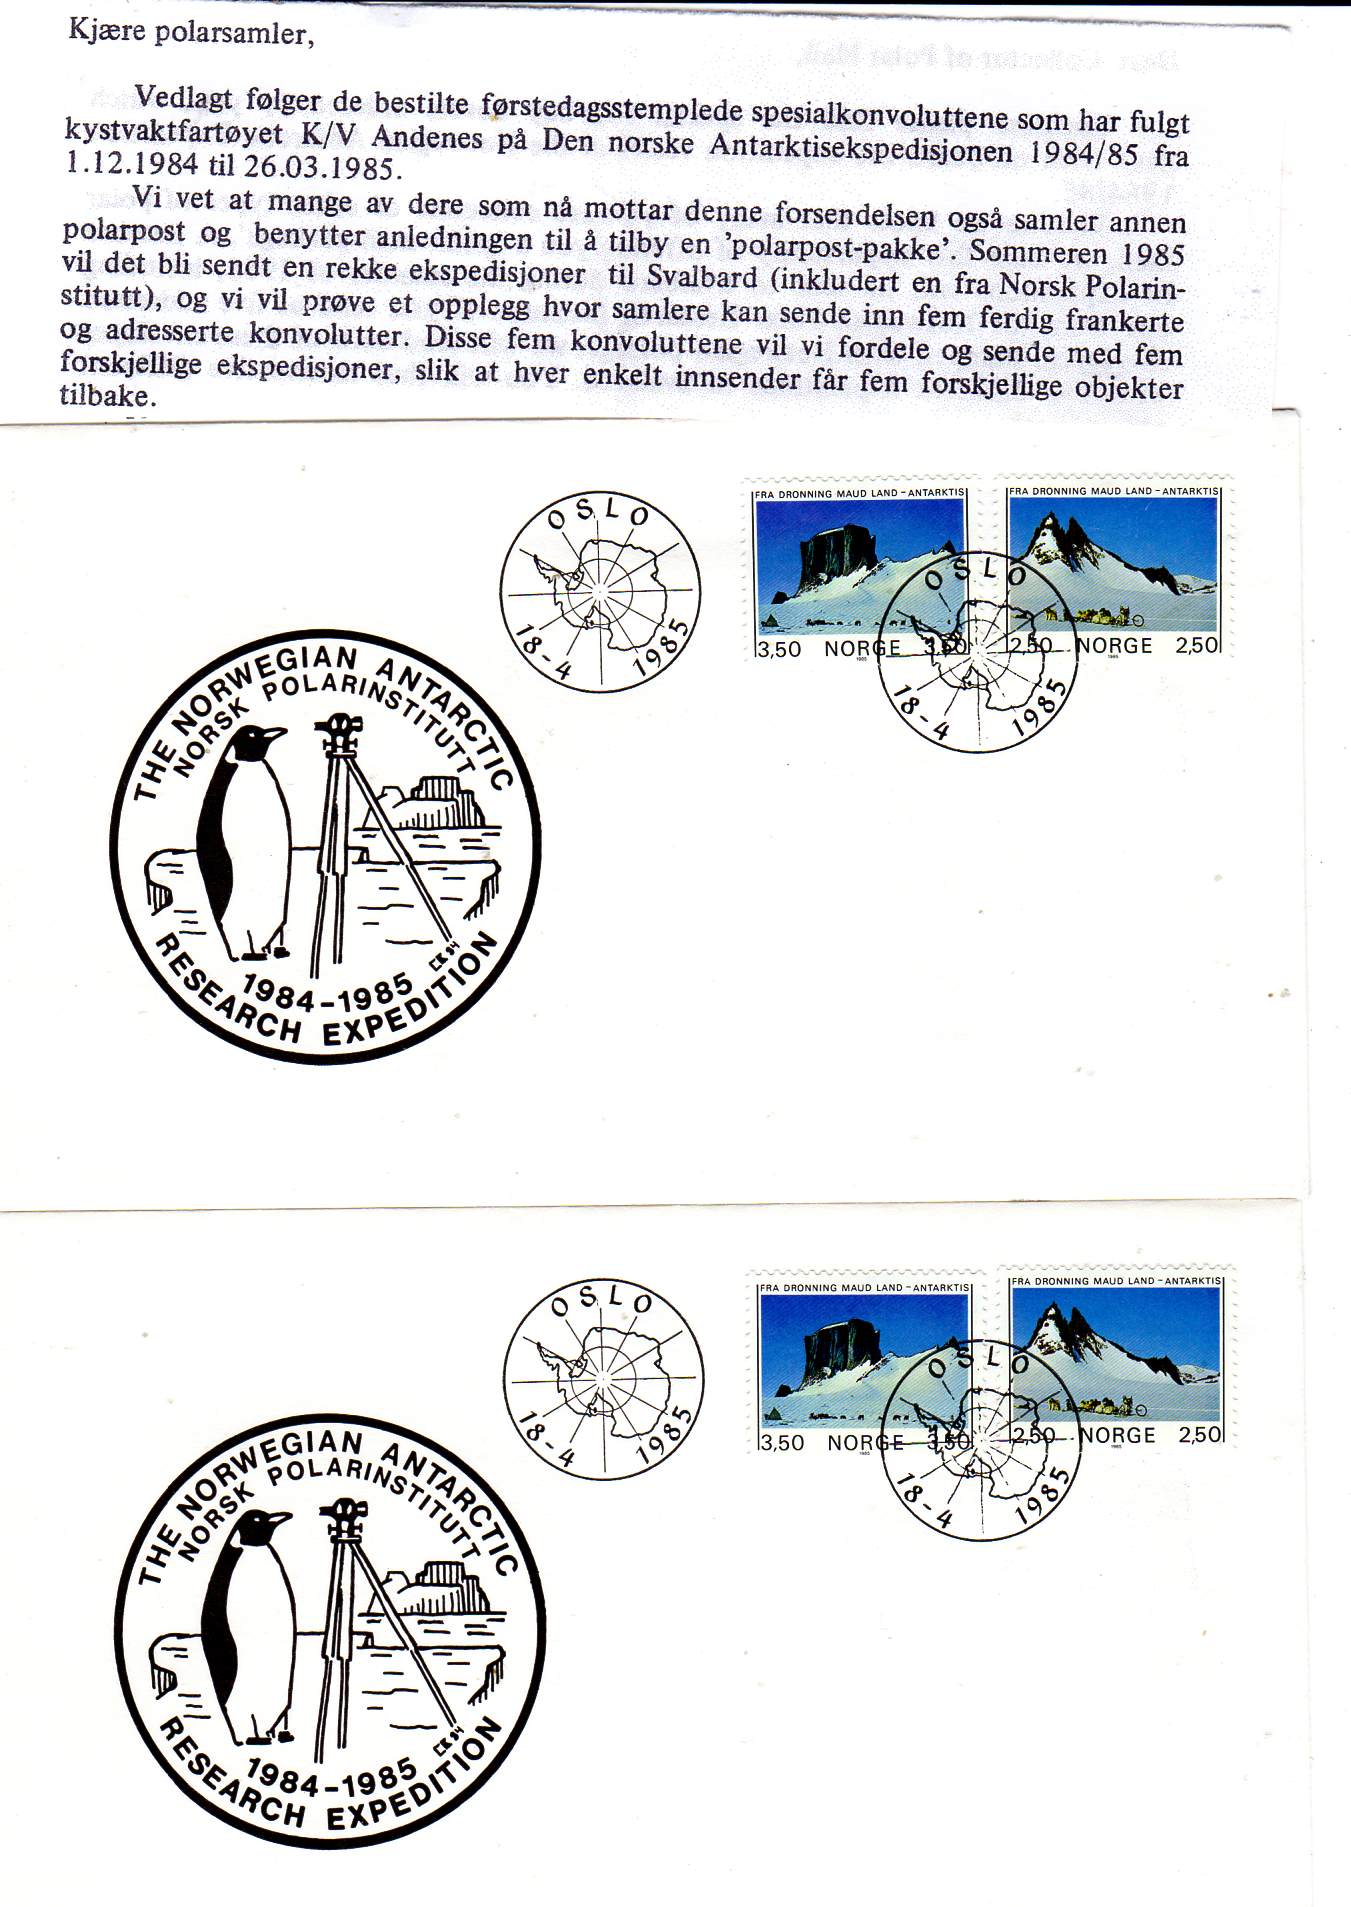 Den norske antarktisekspedisjonen 1984/1985 ved K/V Andenes